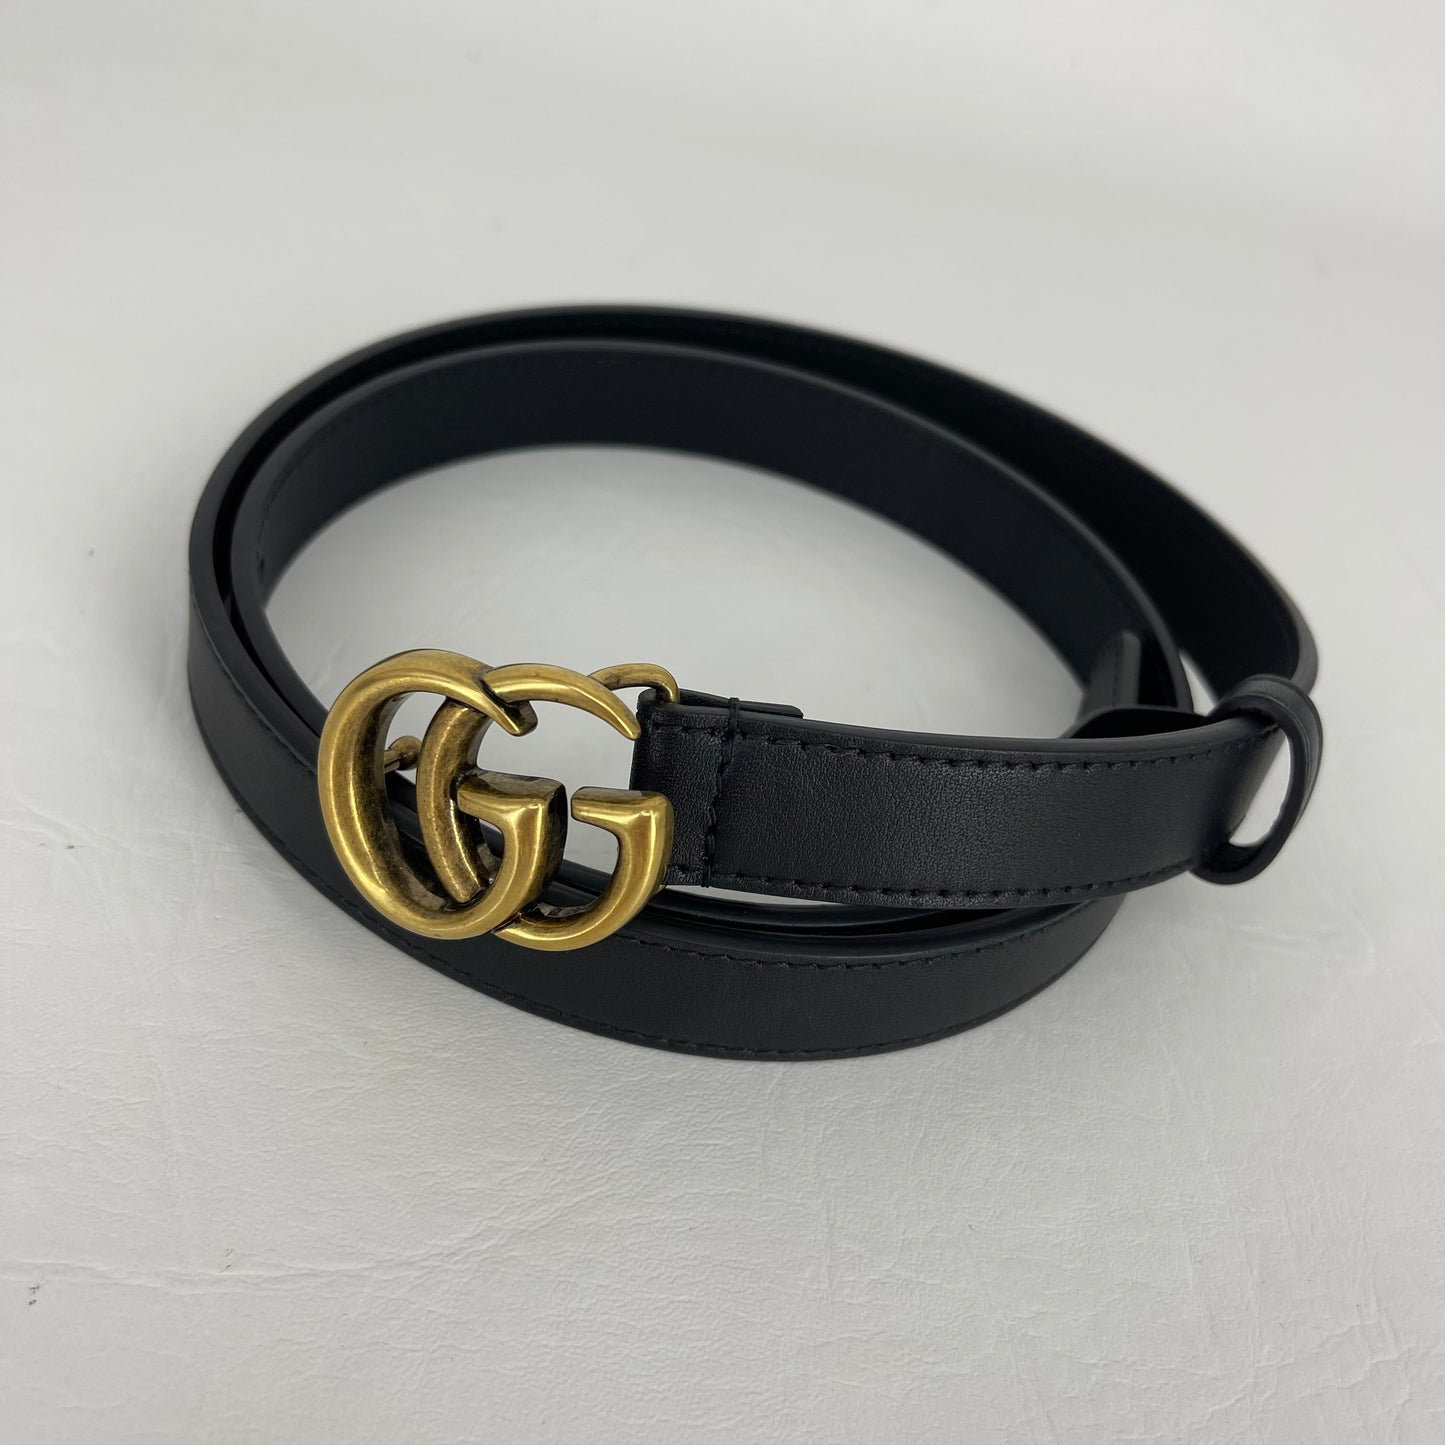 Authentic Gucci Marmont Black Thin Belt Sz 85